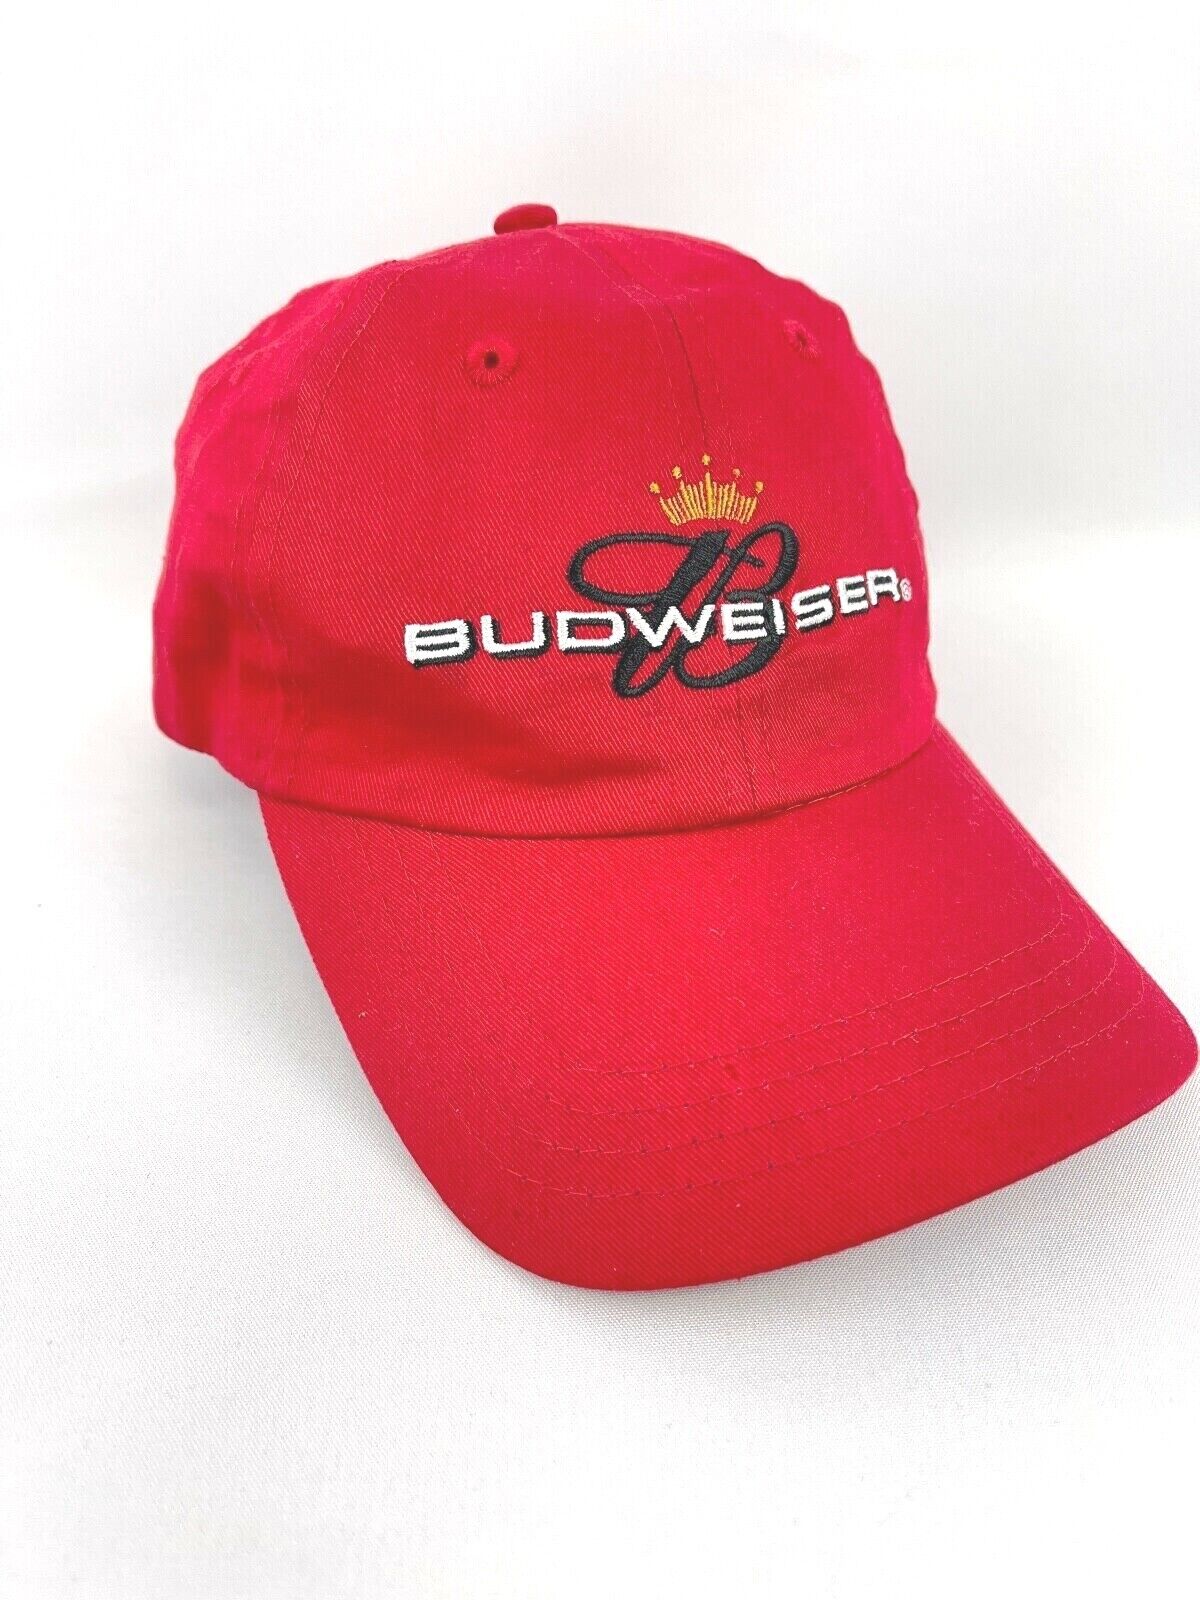 Budweiser Red Hat, Ball Cap